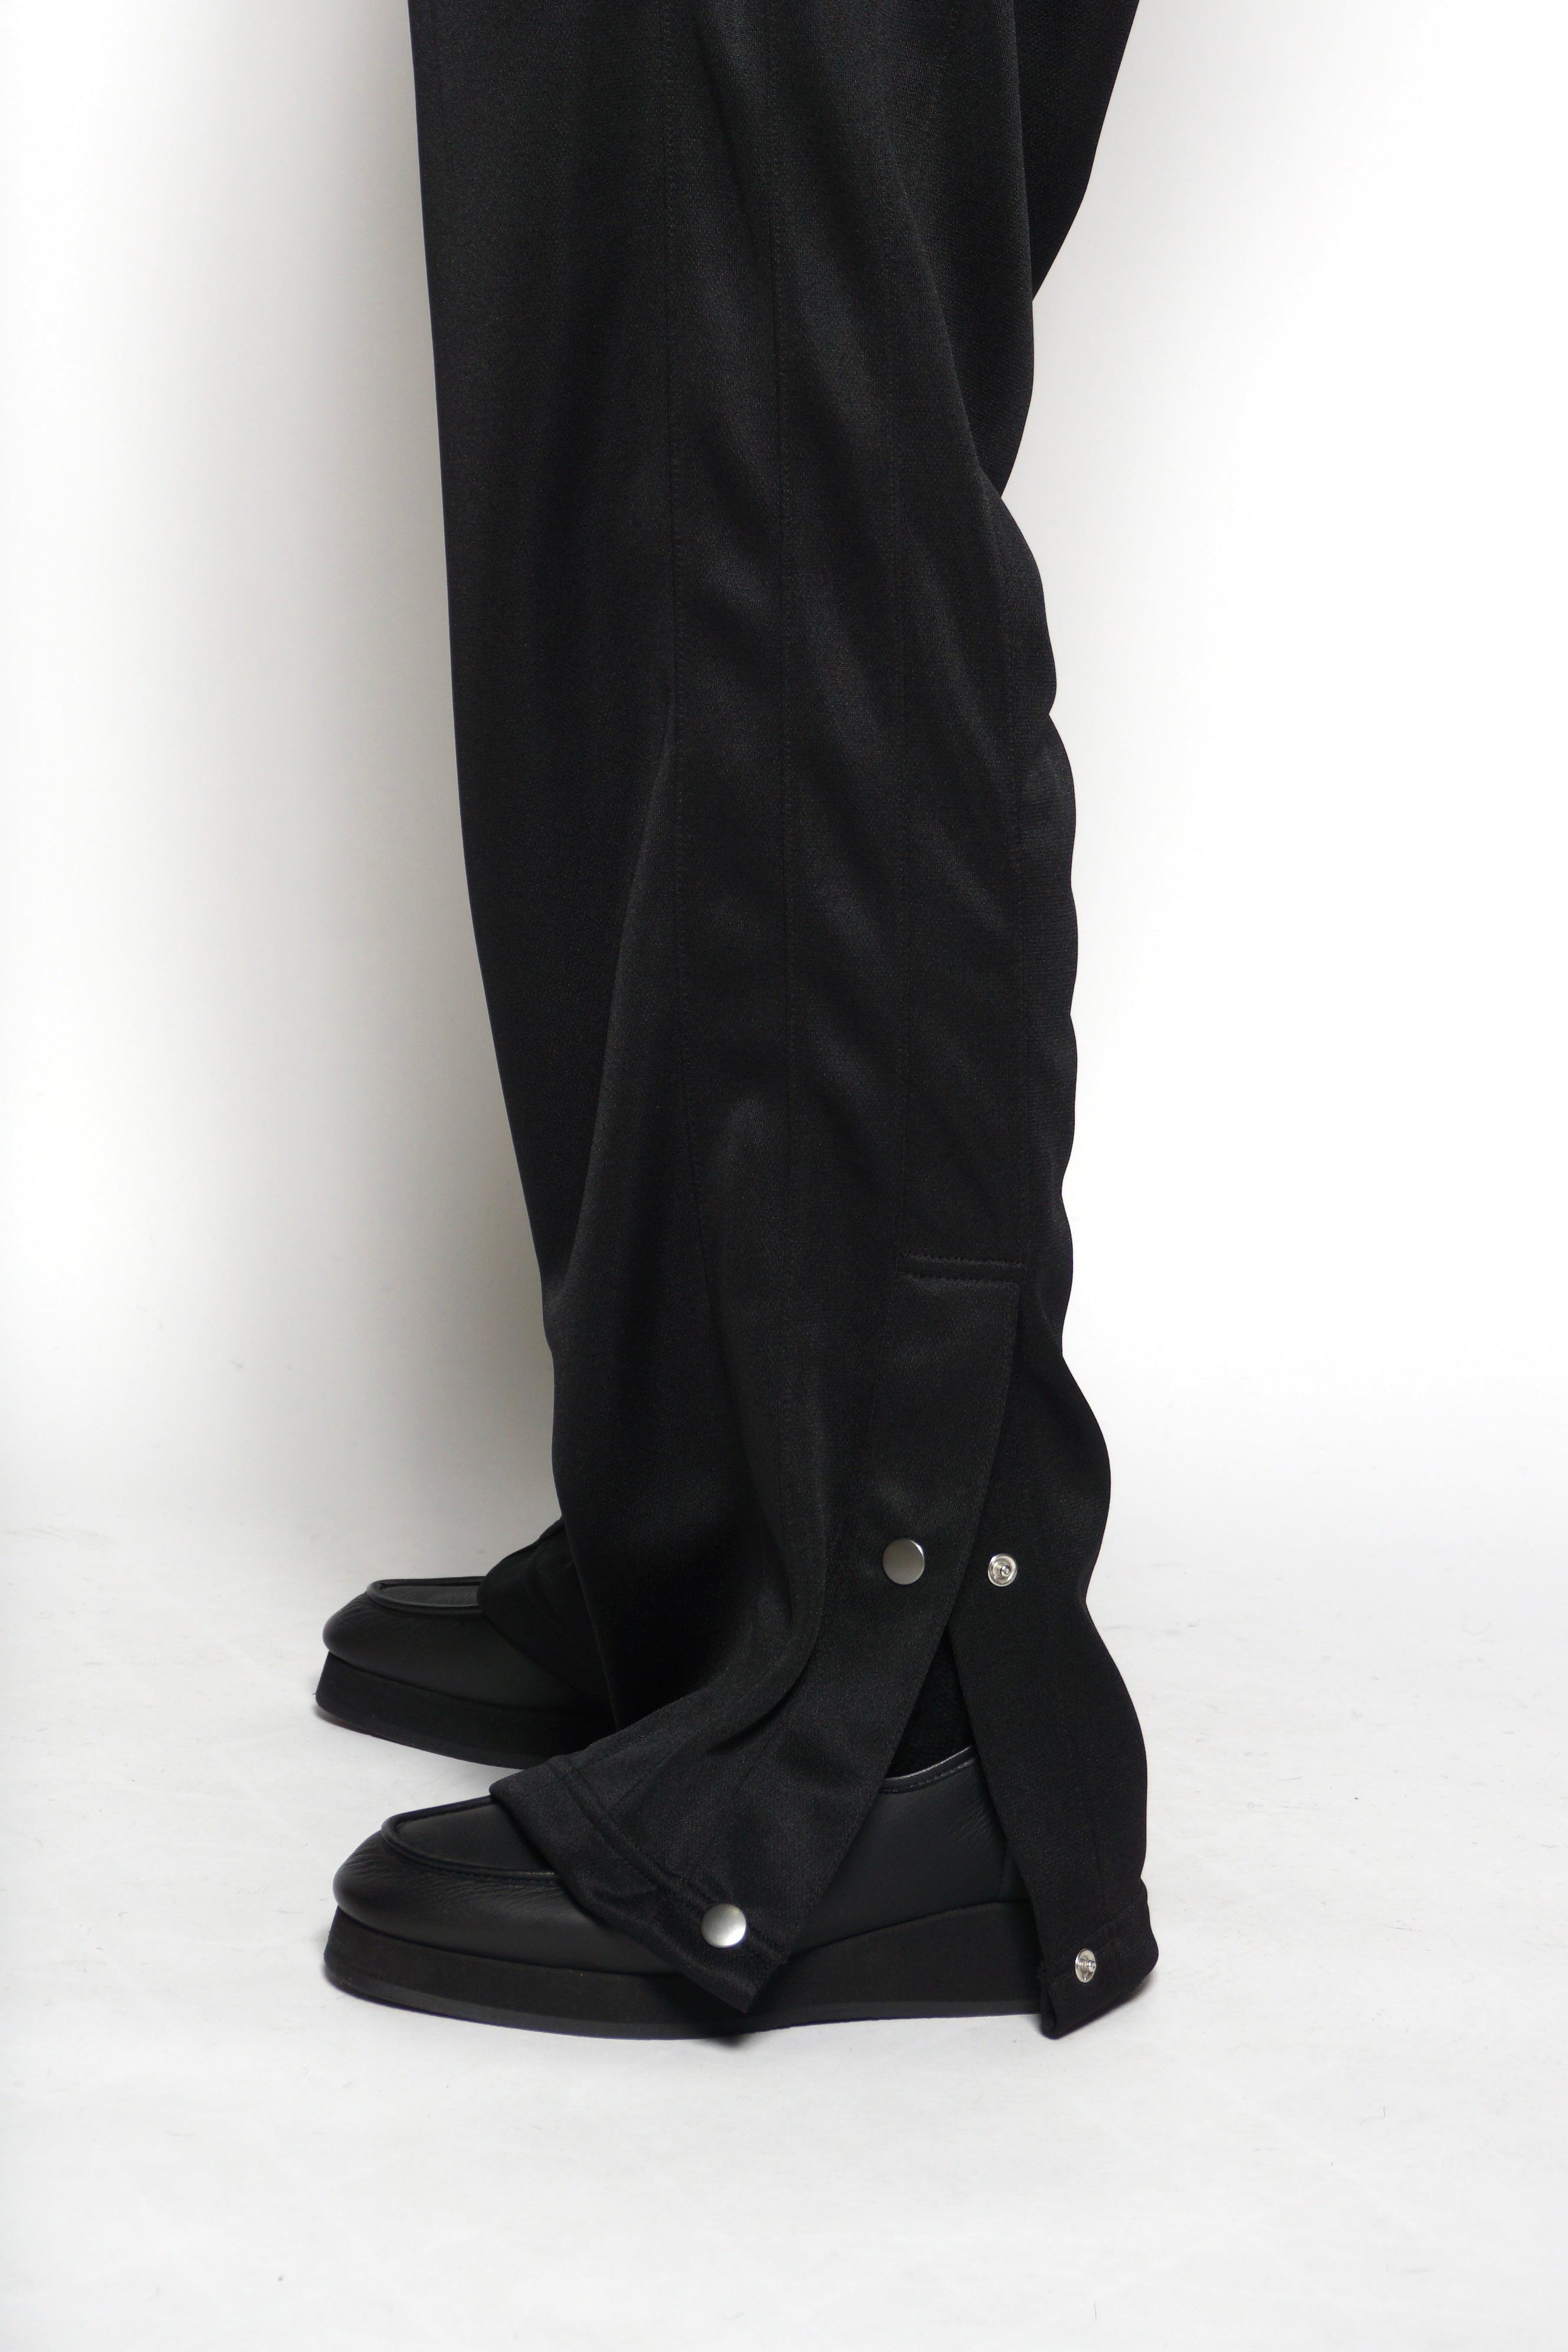 LOCARINA ロカリナ / SLIT TRACK PANTS スリットトラックパンツ (BLACK ブラック)